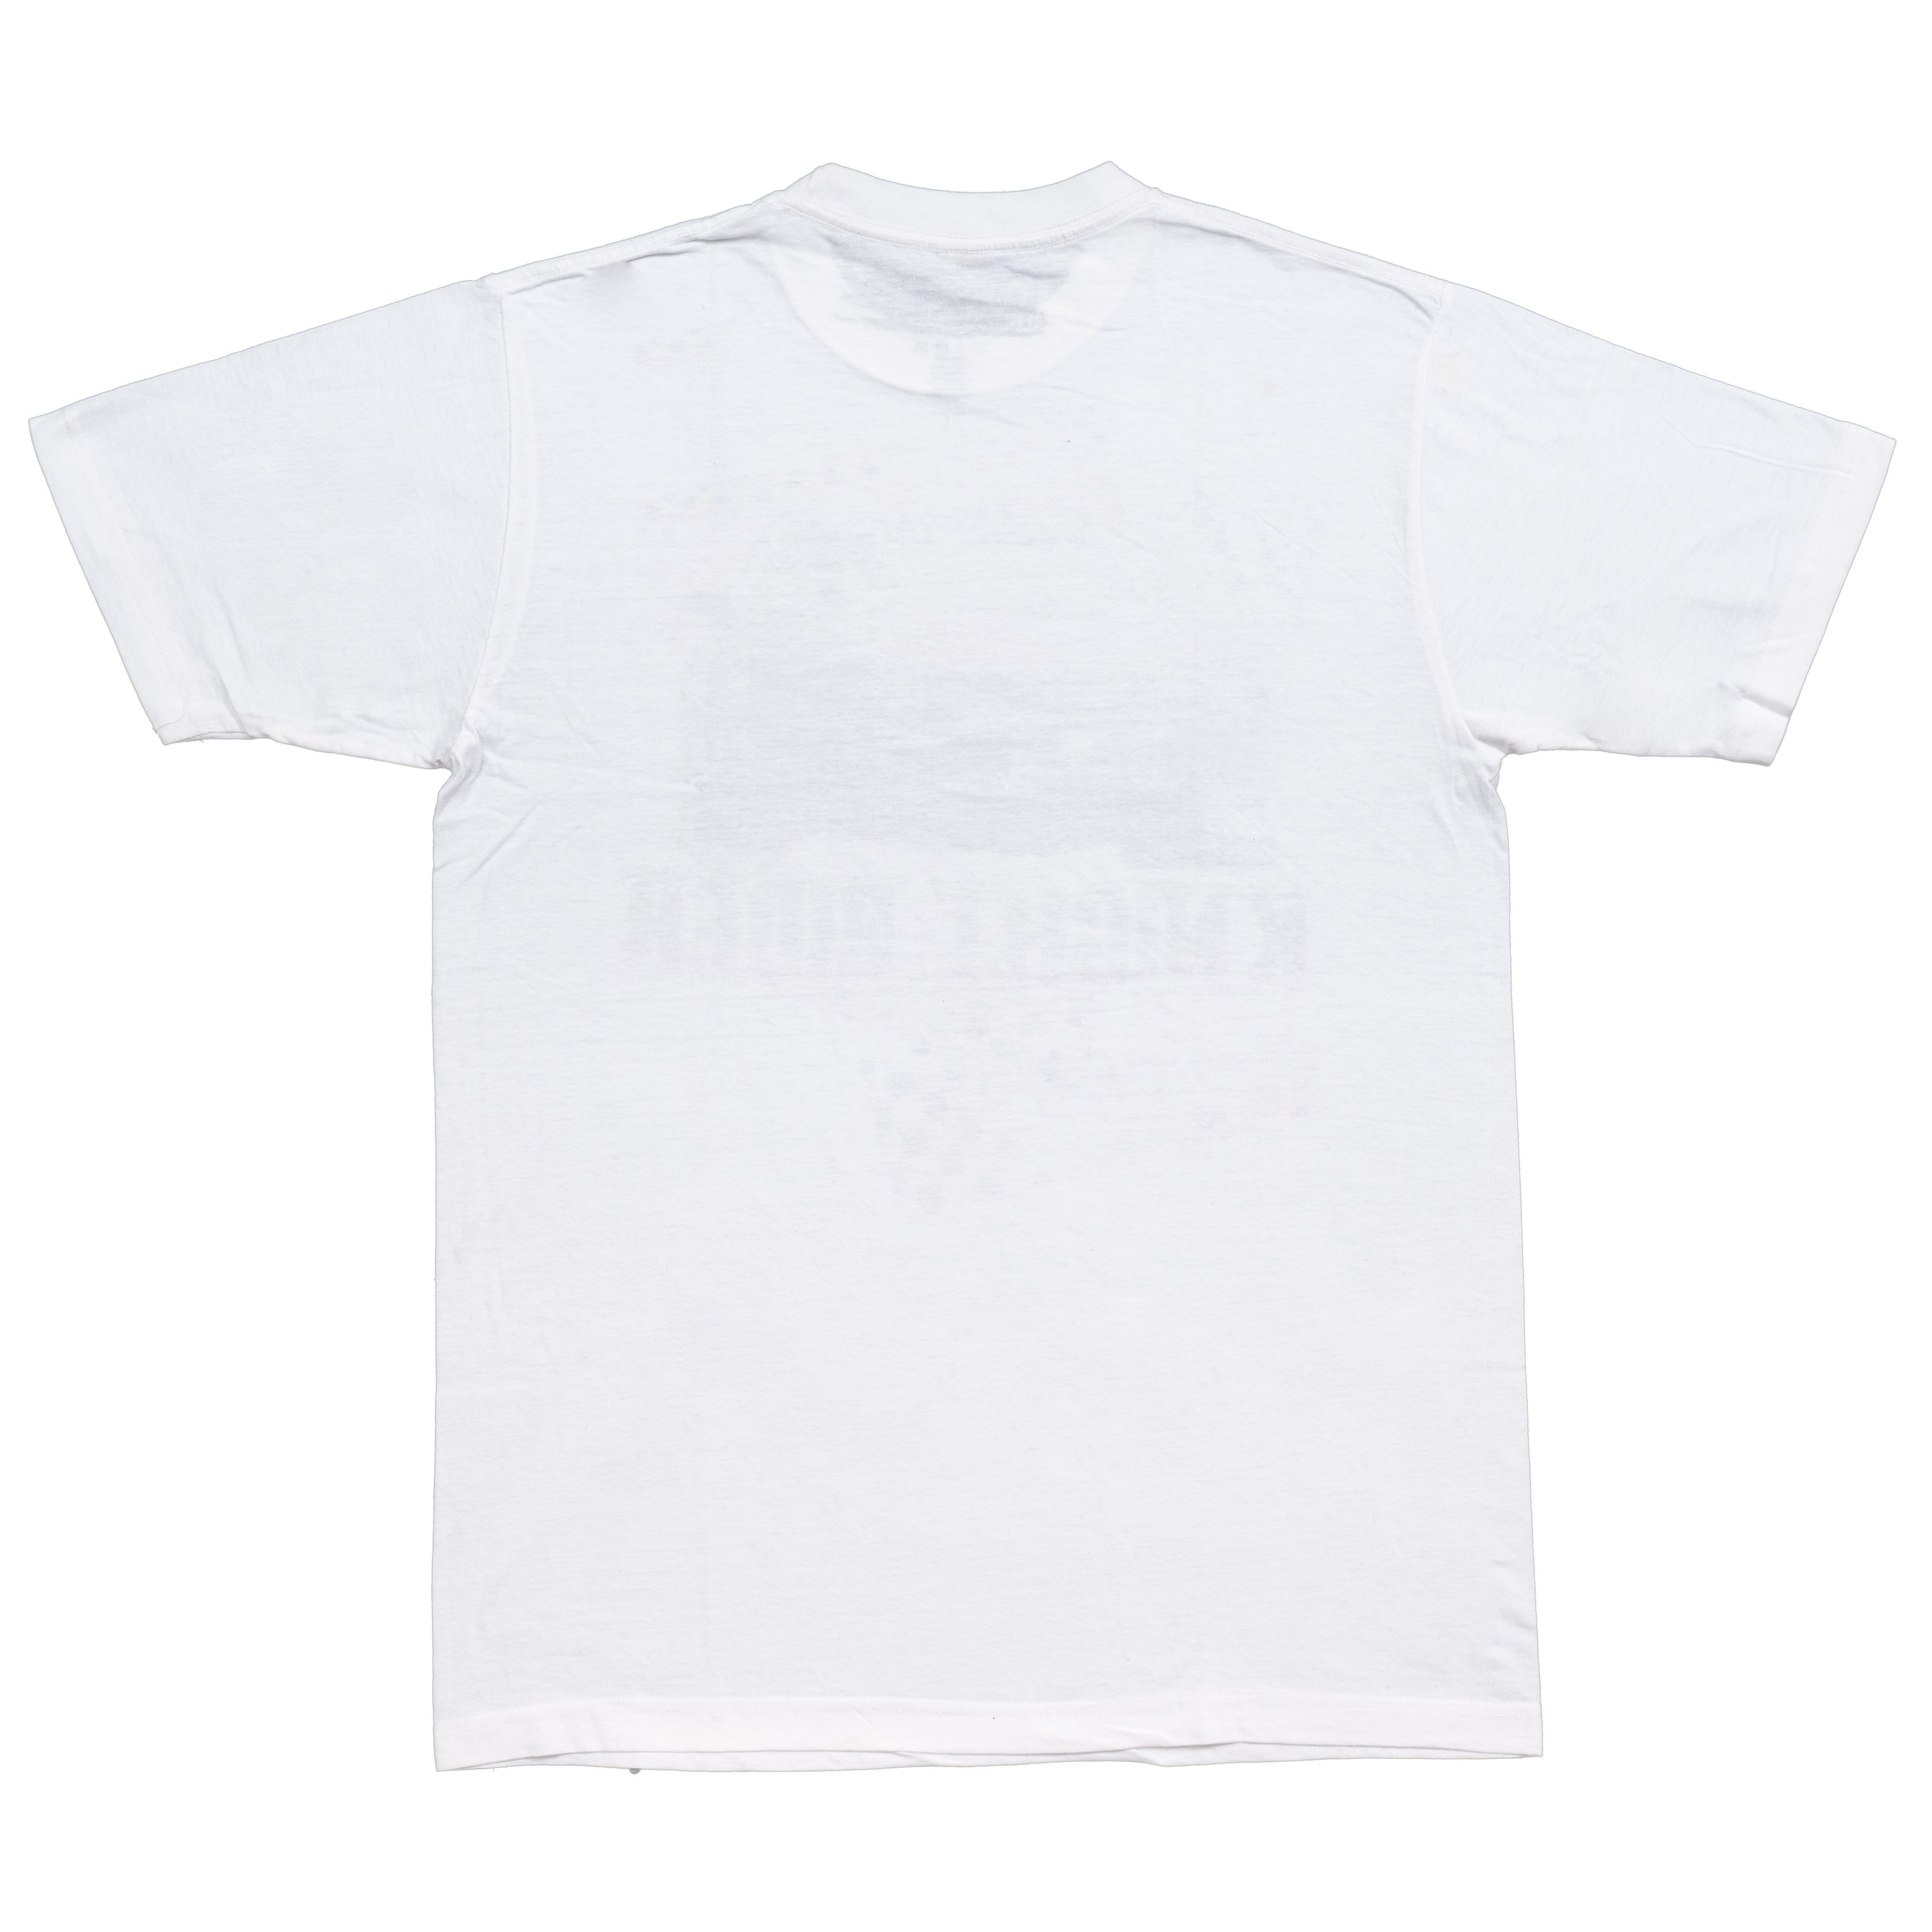 Knight Rider KITT Adult White T-Shirt